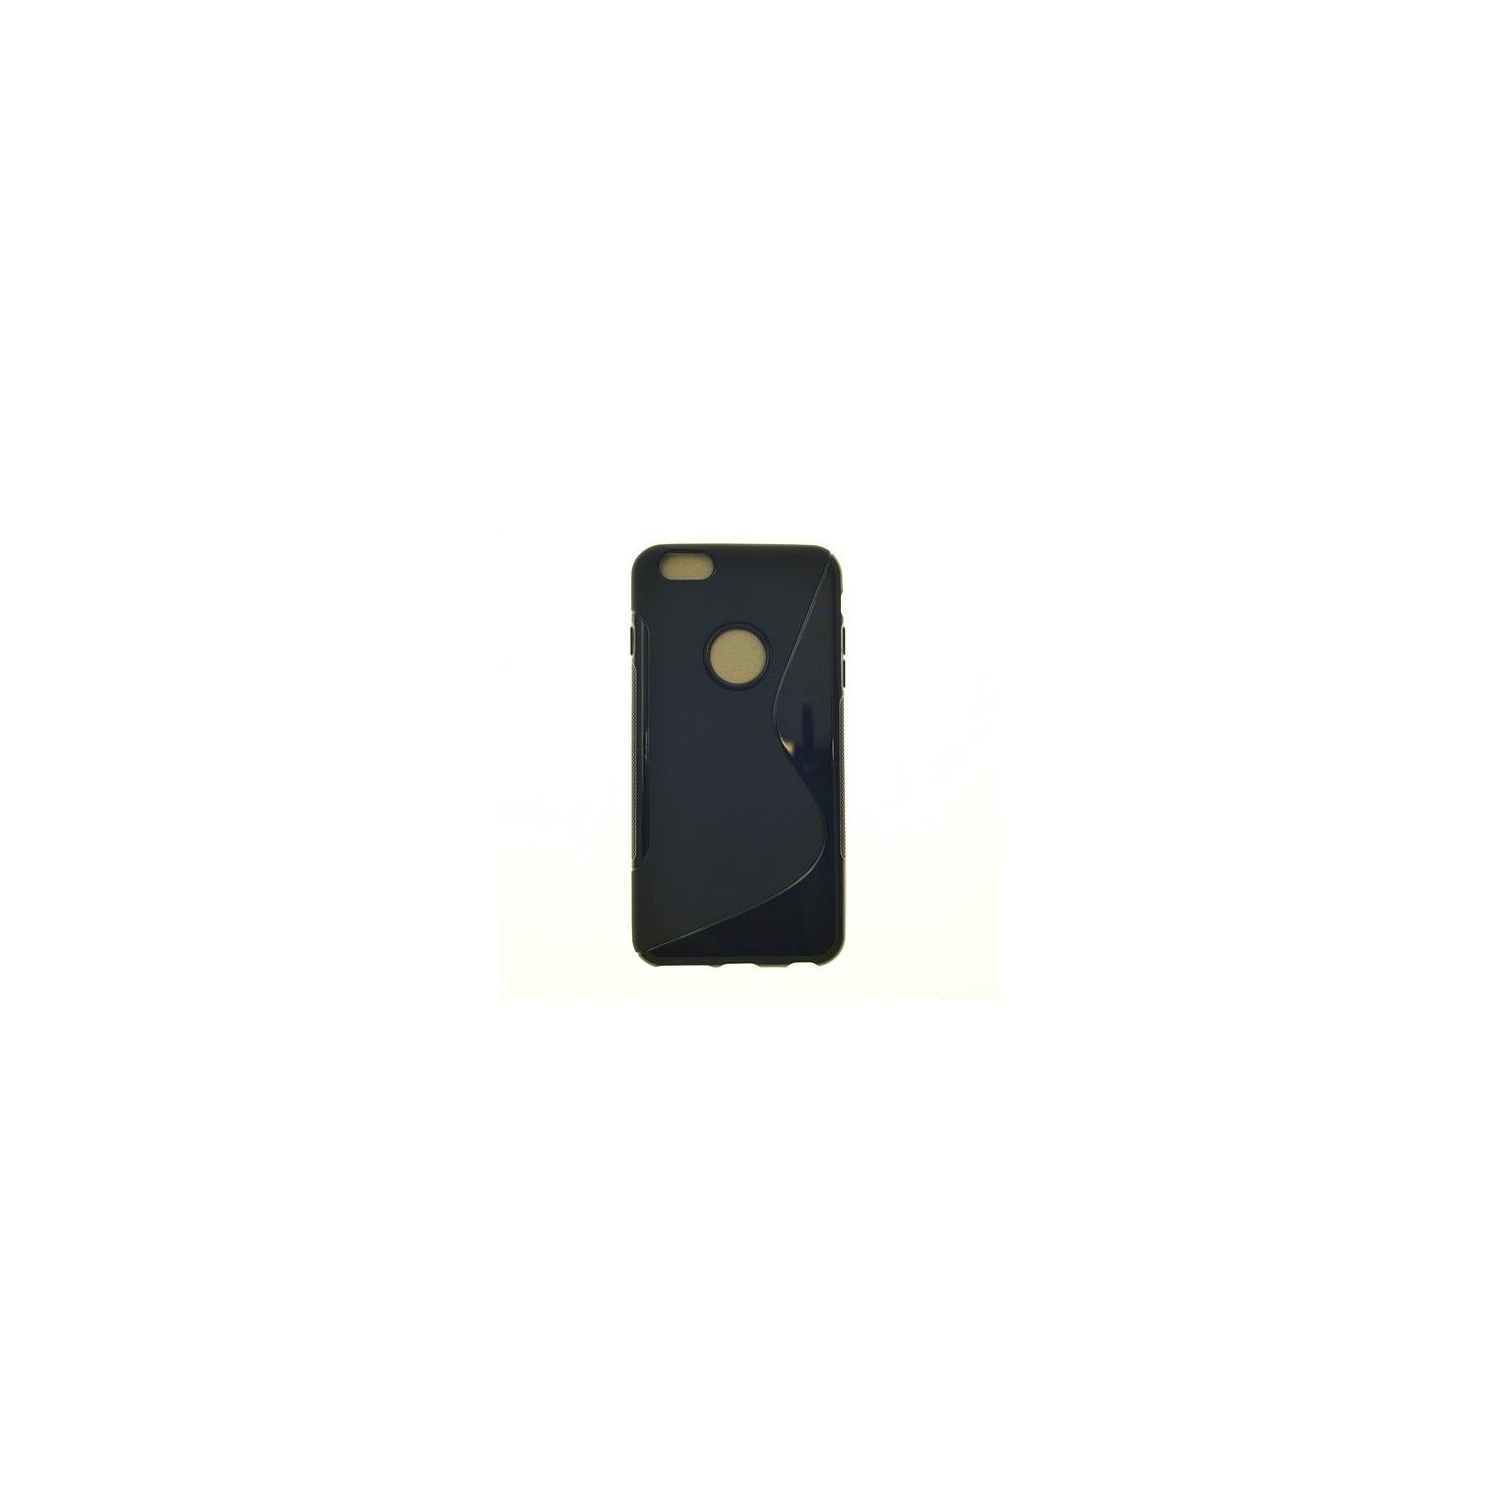 Iphone 6 Plus, Iphone 6s Plus S Line Design Soft Case, Black